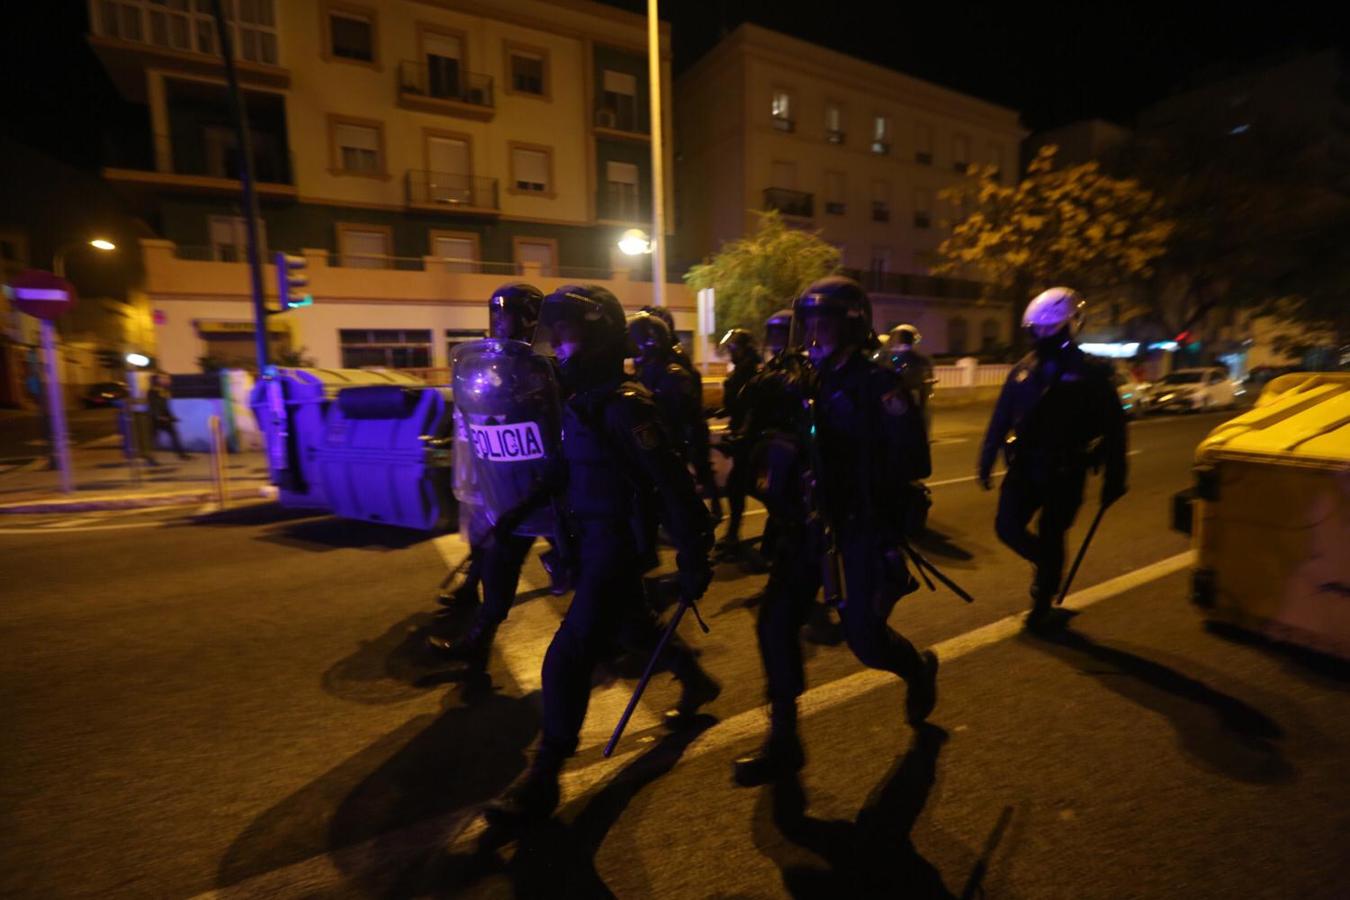 La manifestación antifascista en Cádiz acaba con agresiones y contenedores quemados